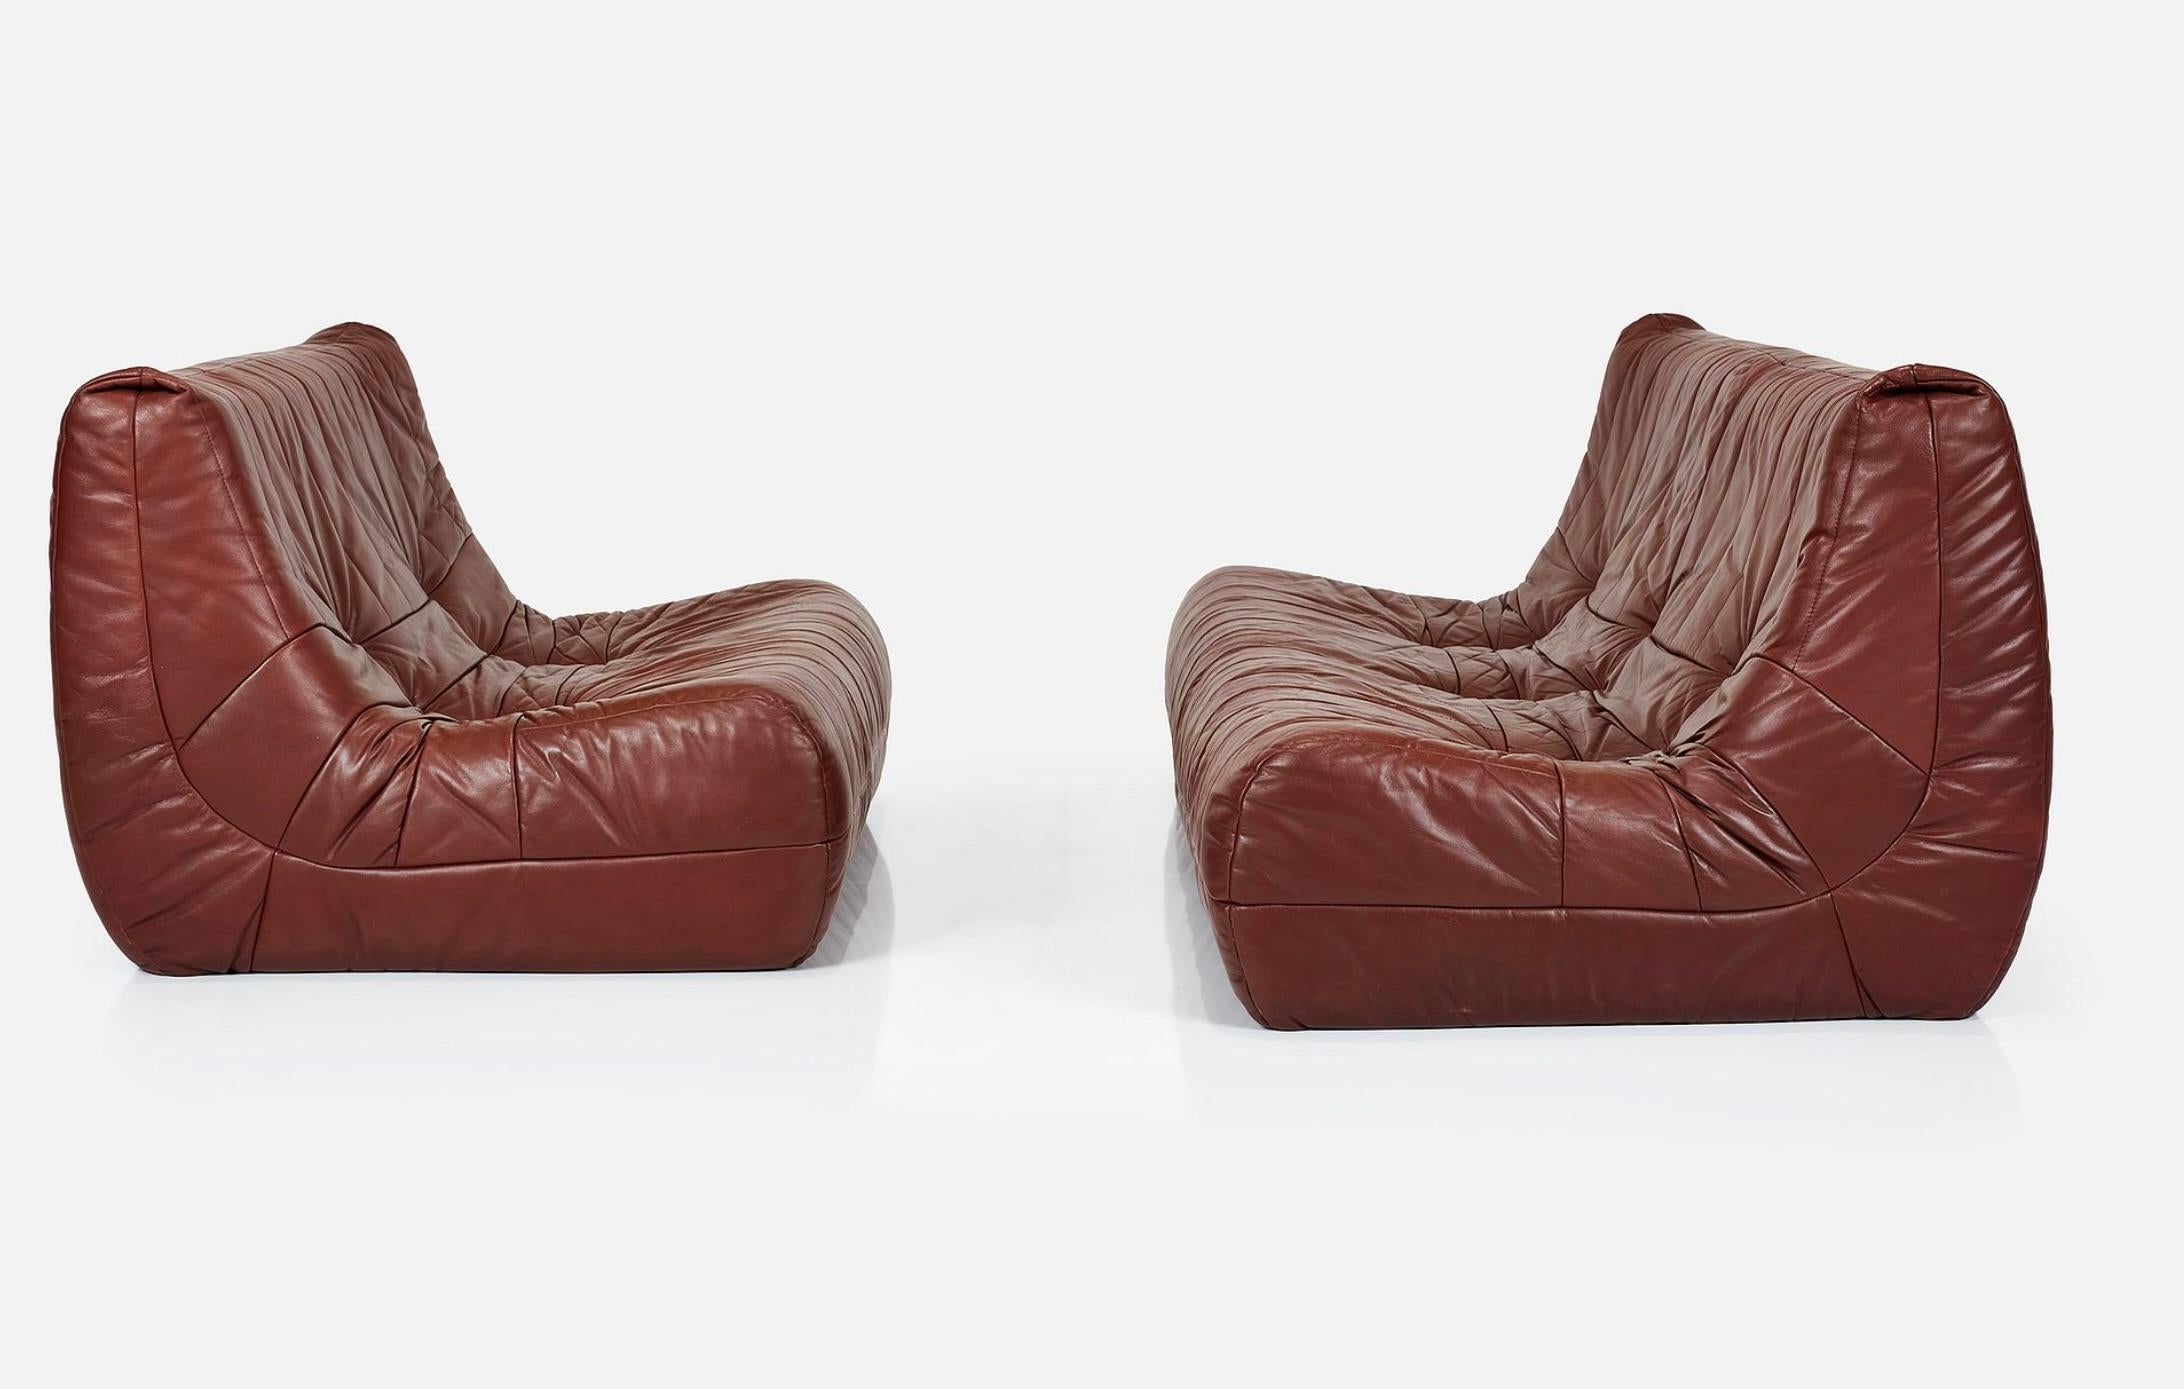 Il s'agit d'un magnifique ensemble de canapés en cuir moderniste italien - 3 places et 2 places.  Le siège trois places mesure 30